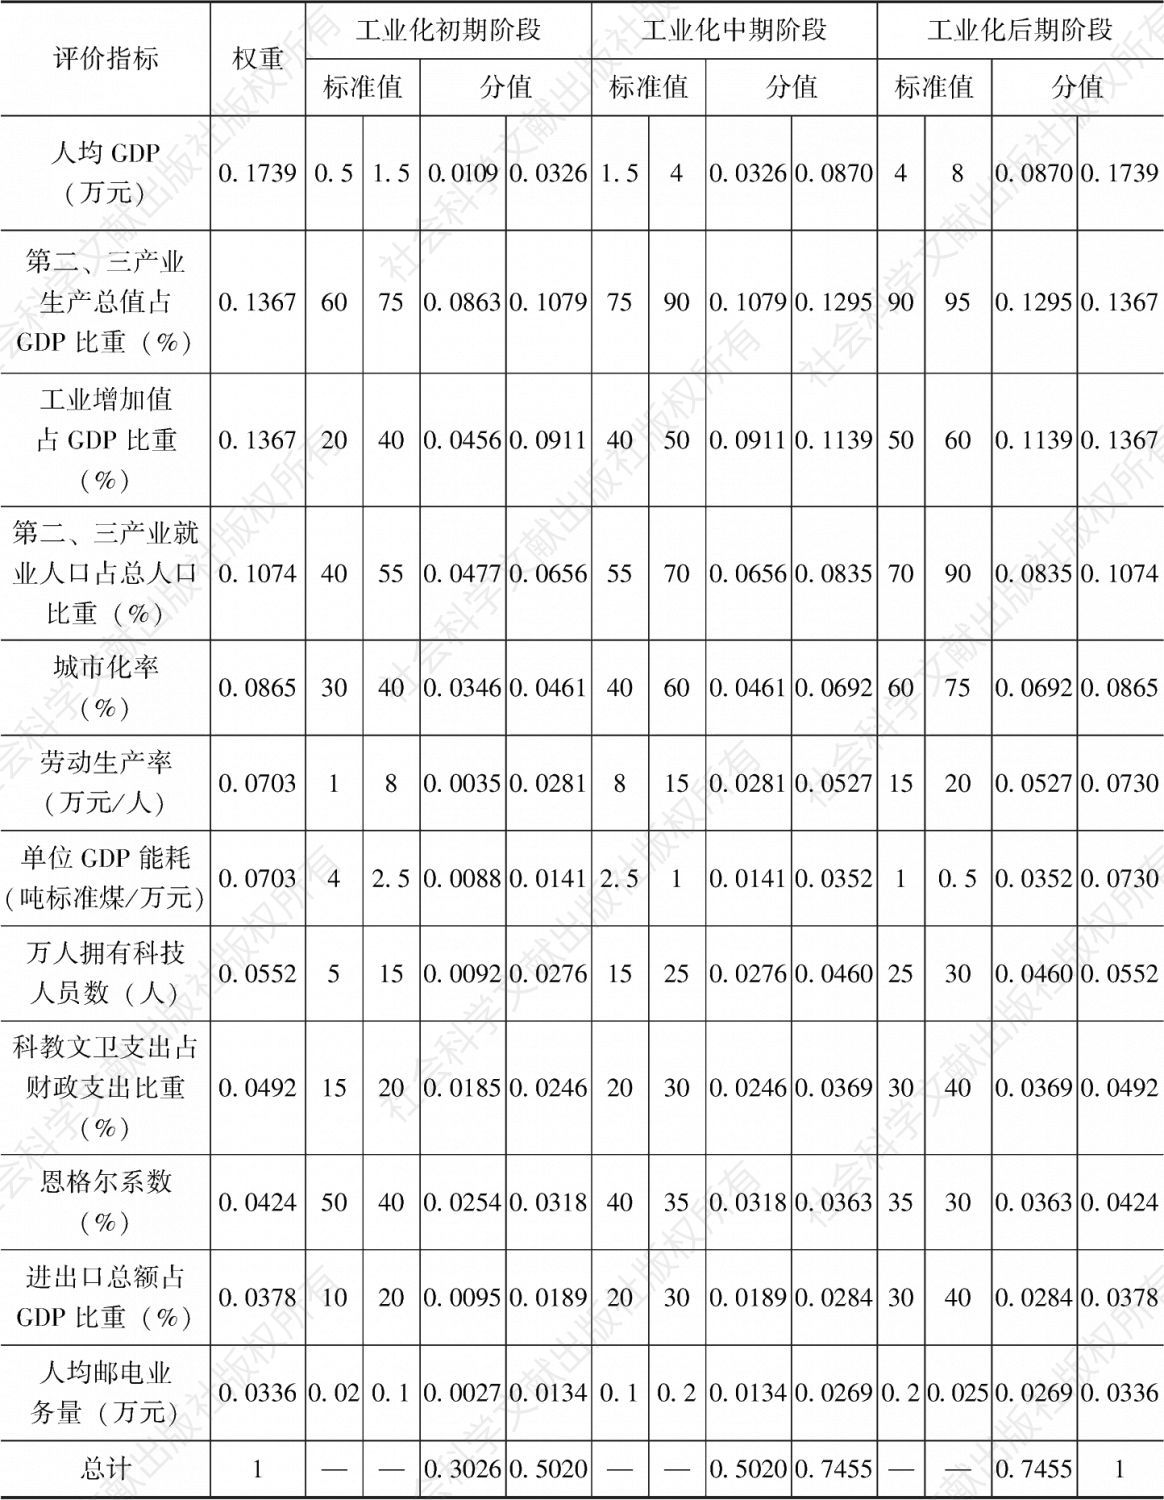 表2-15 内蒙古自治区工业化水平综合评价体系